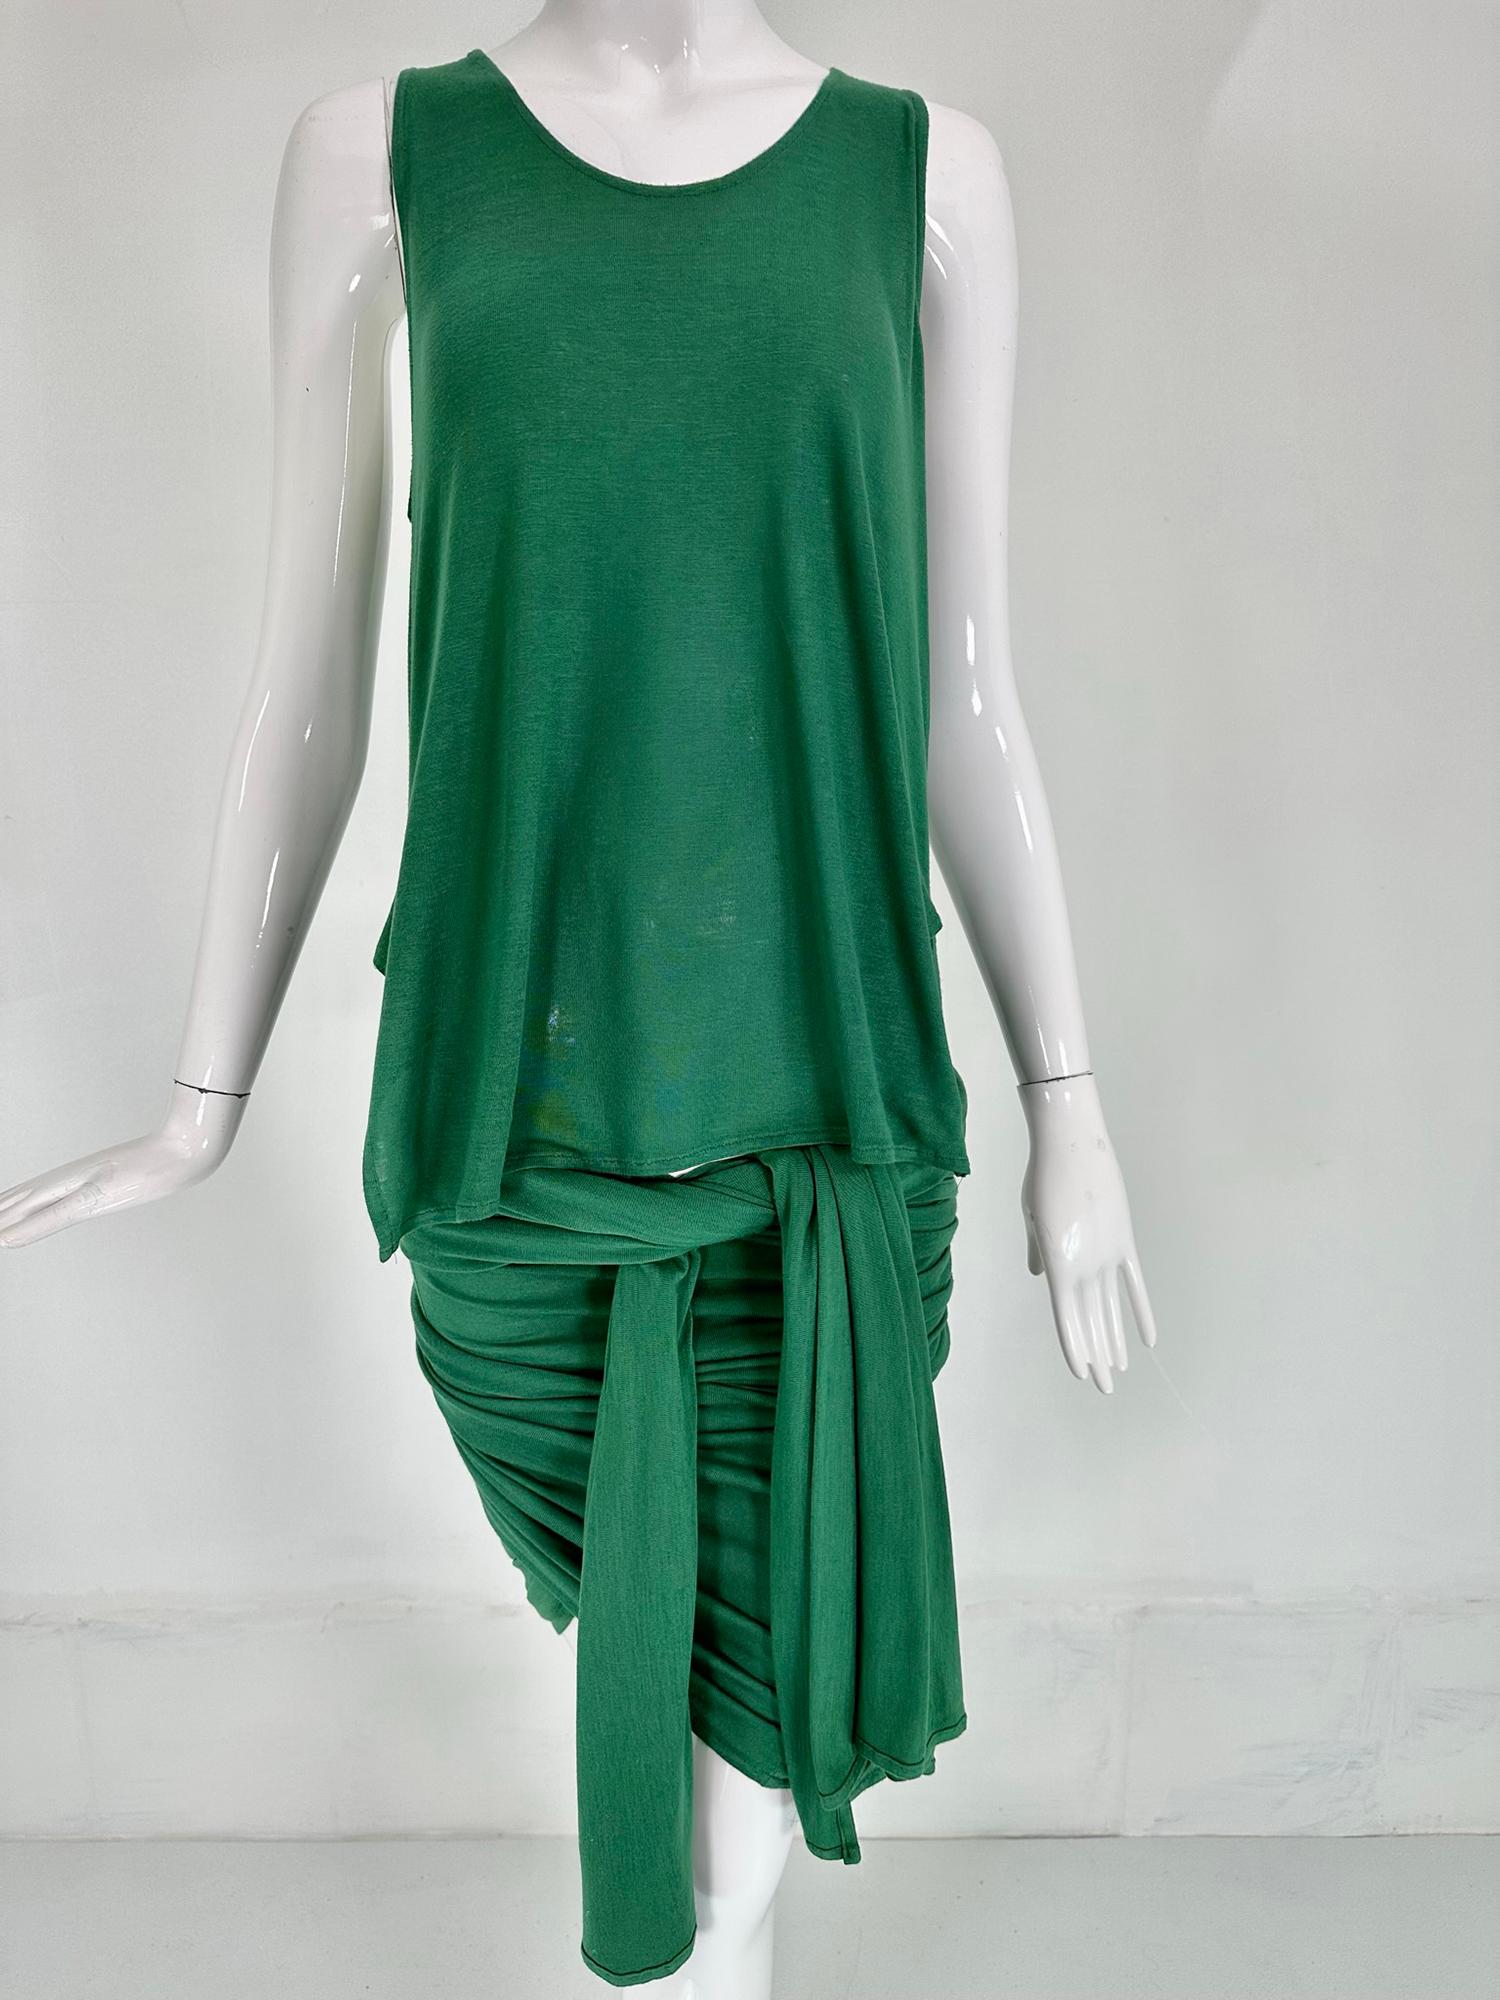 Paul Gaultier, Gaultier Public rare 1980 vert robe en jersey de coton enveloppé et cravate. Robe d'une seule pièce, le débardeur devant est relié au haut et à la jupe du dos d'une seule pièce, il y a des panneaux larges et longs de chaque côté de la